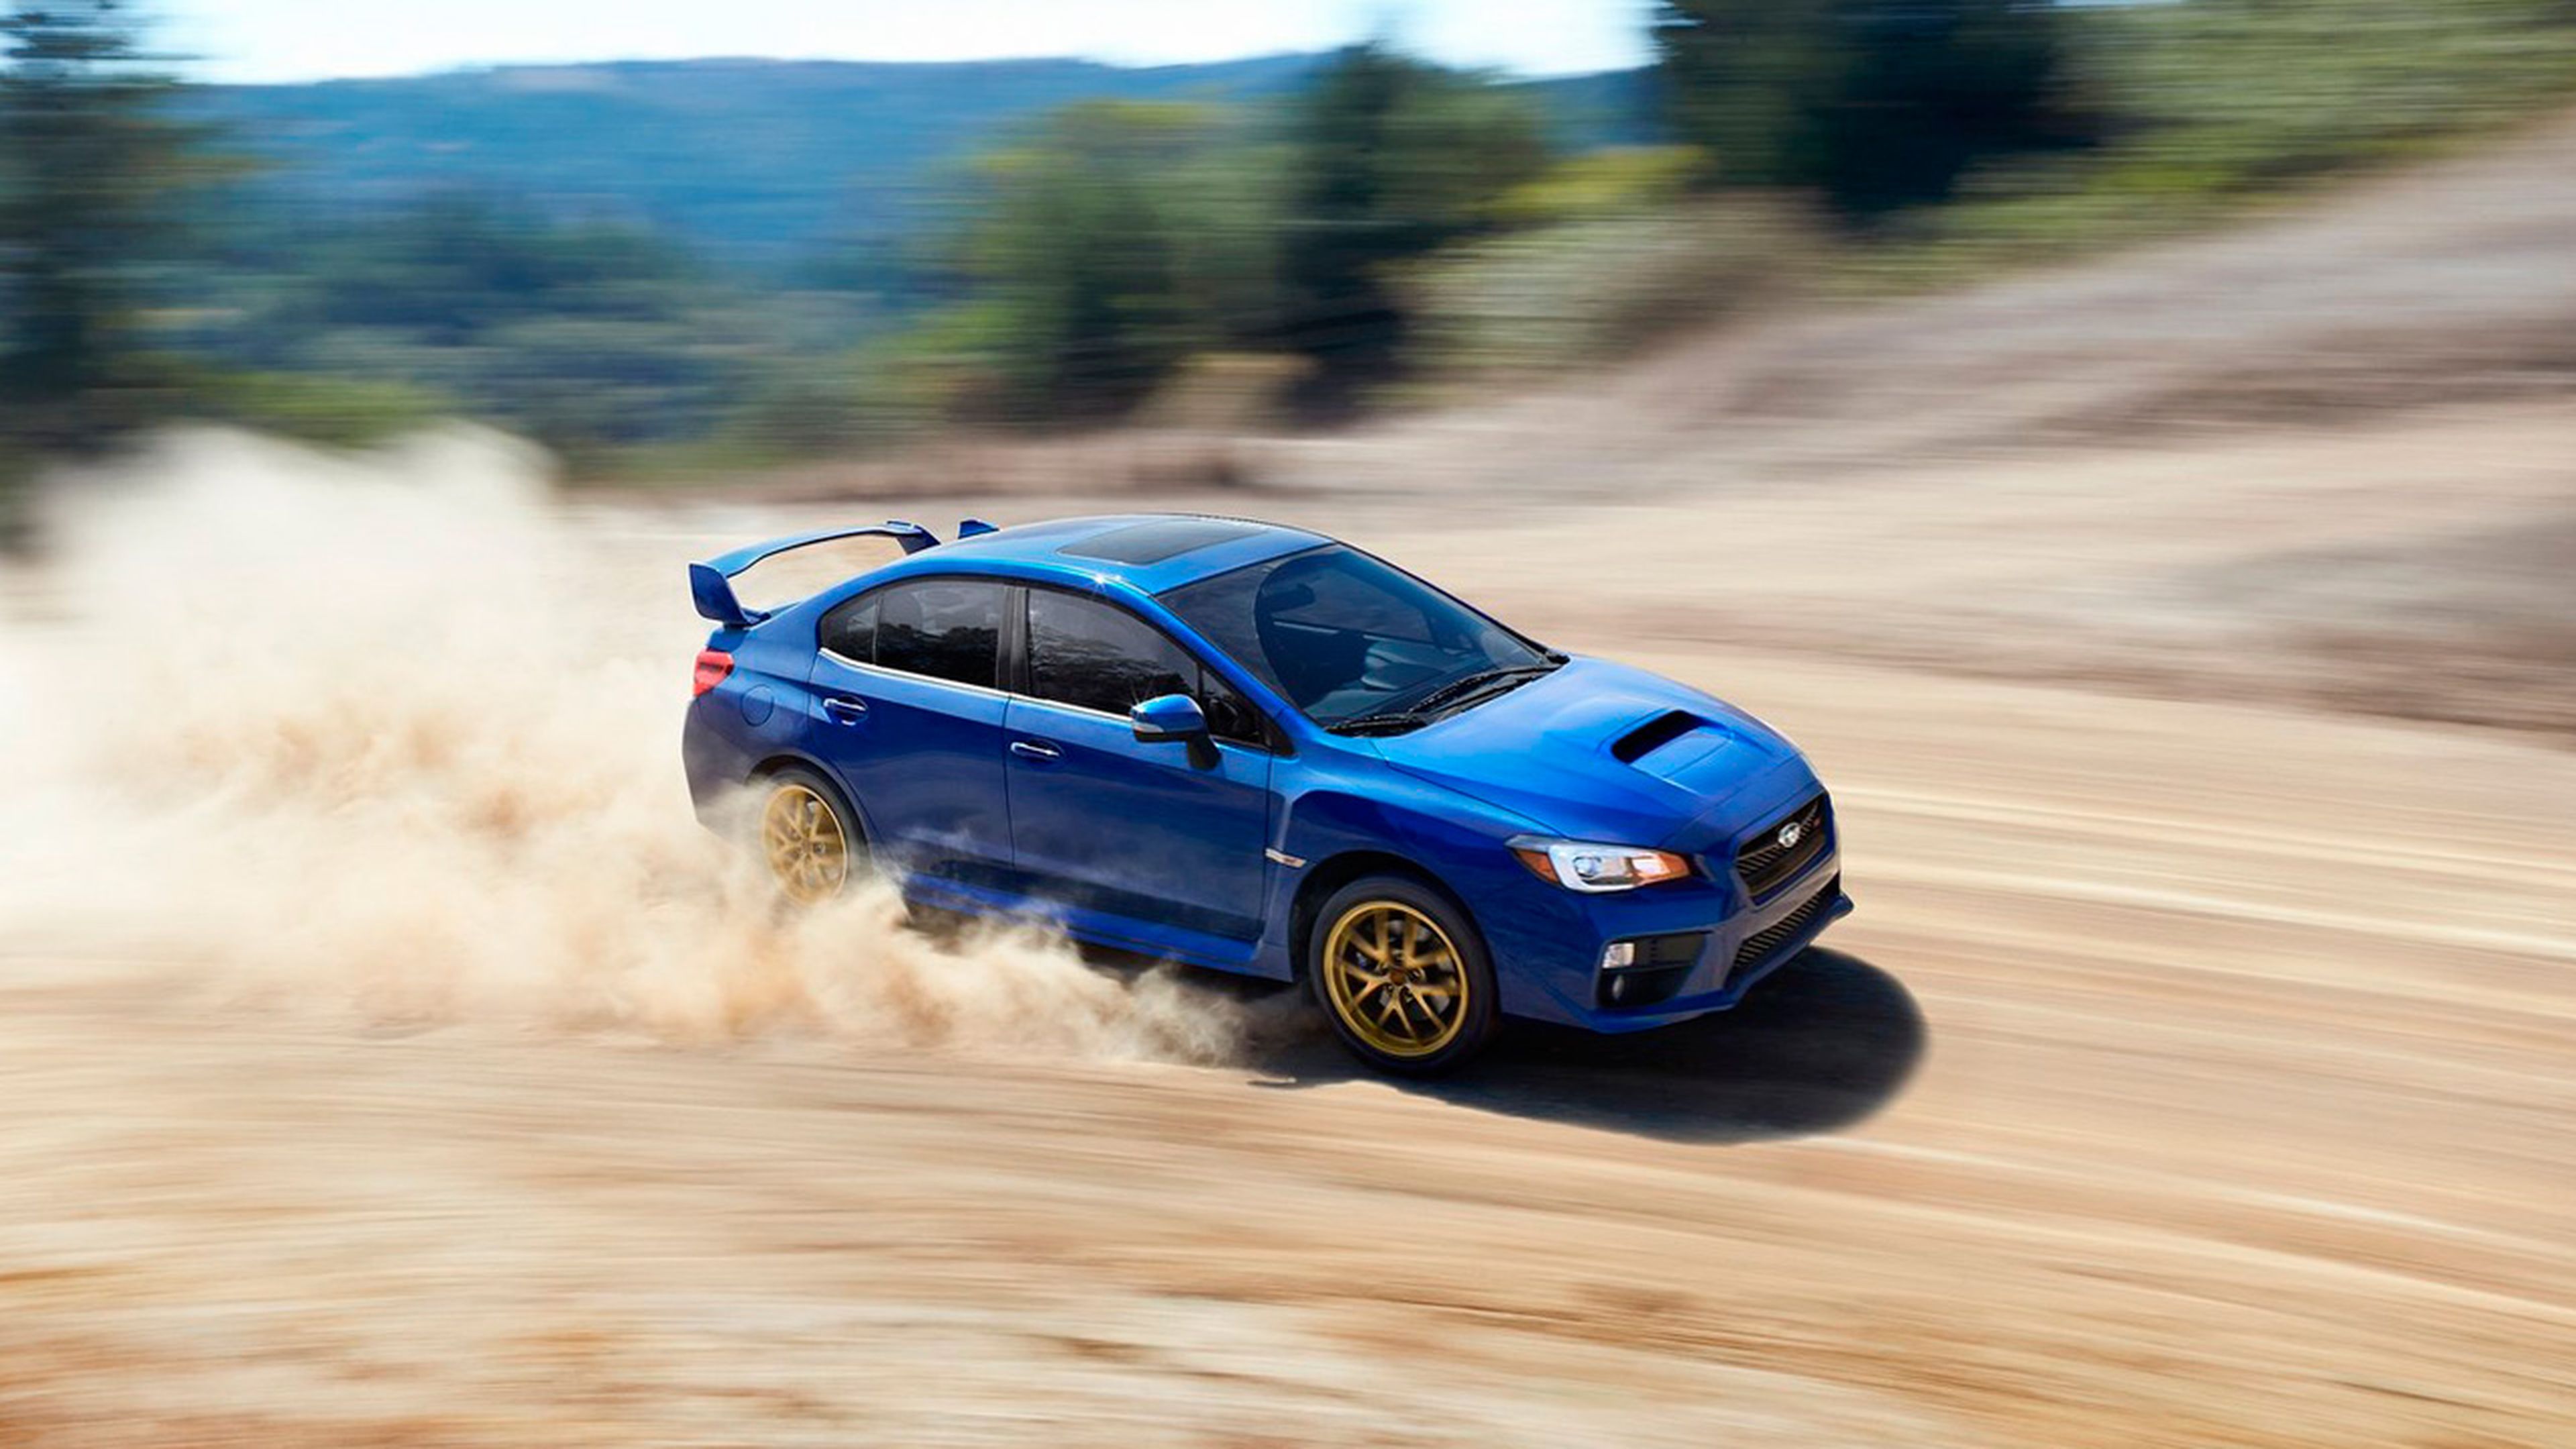 Coches con inspiracion rally: Subaru Impreza STI